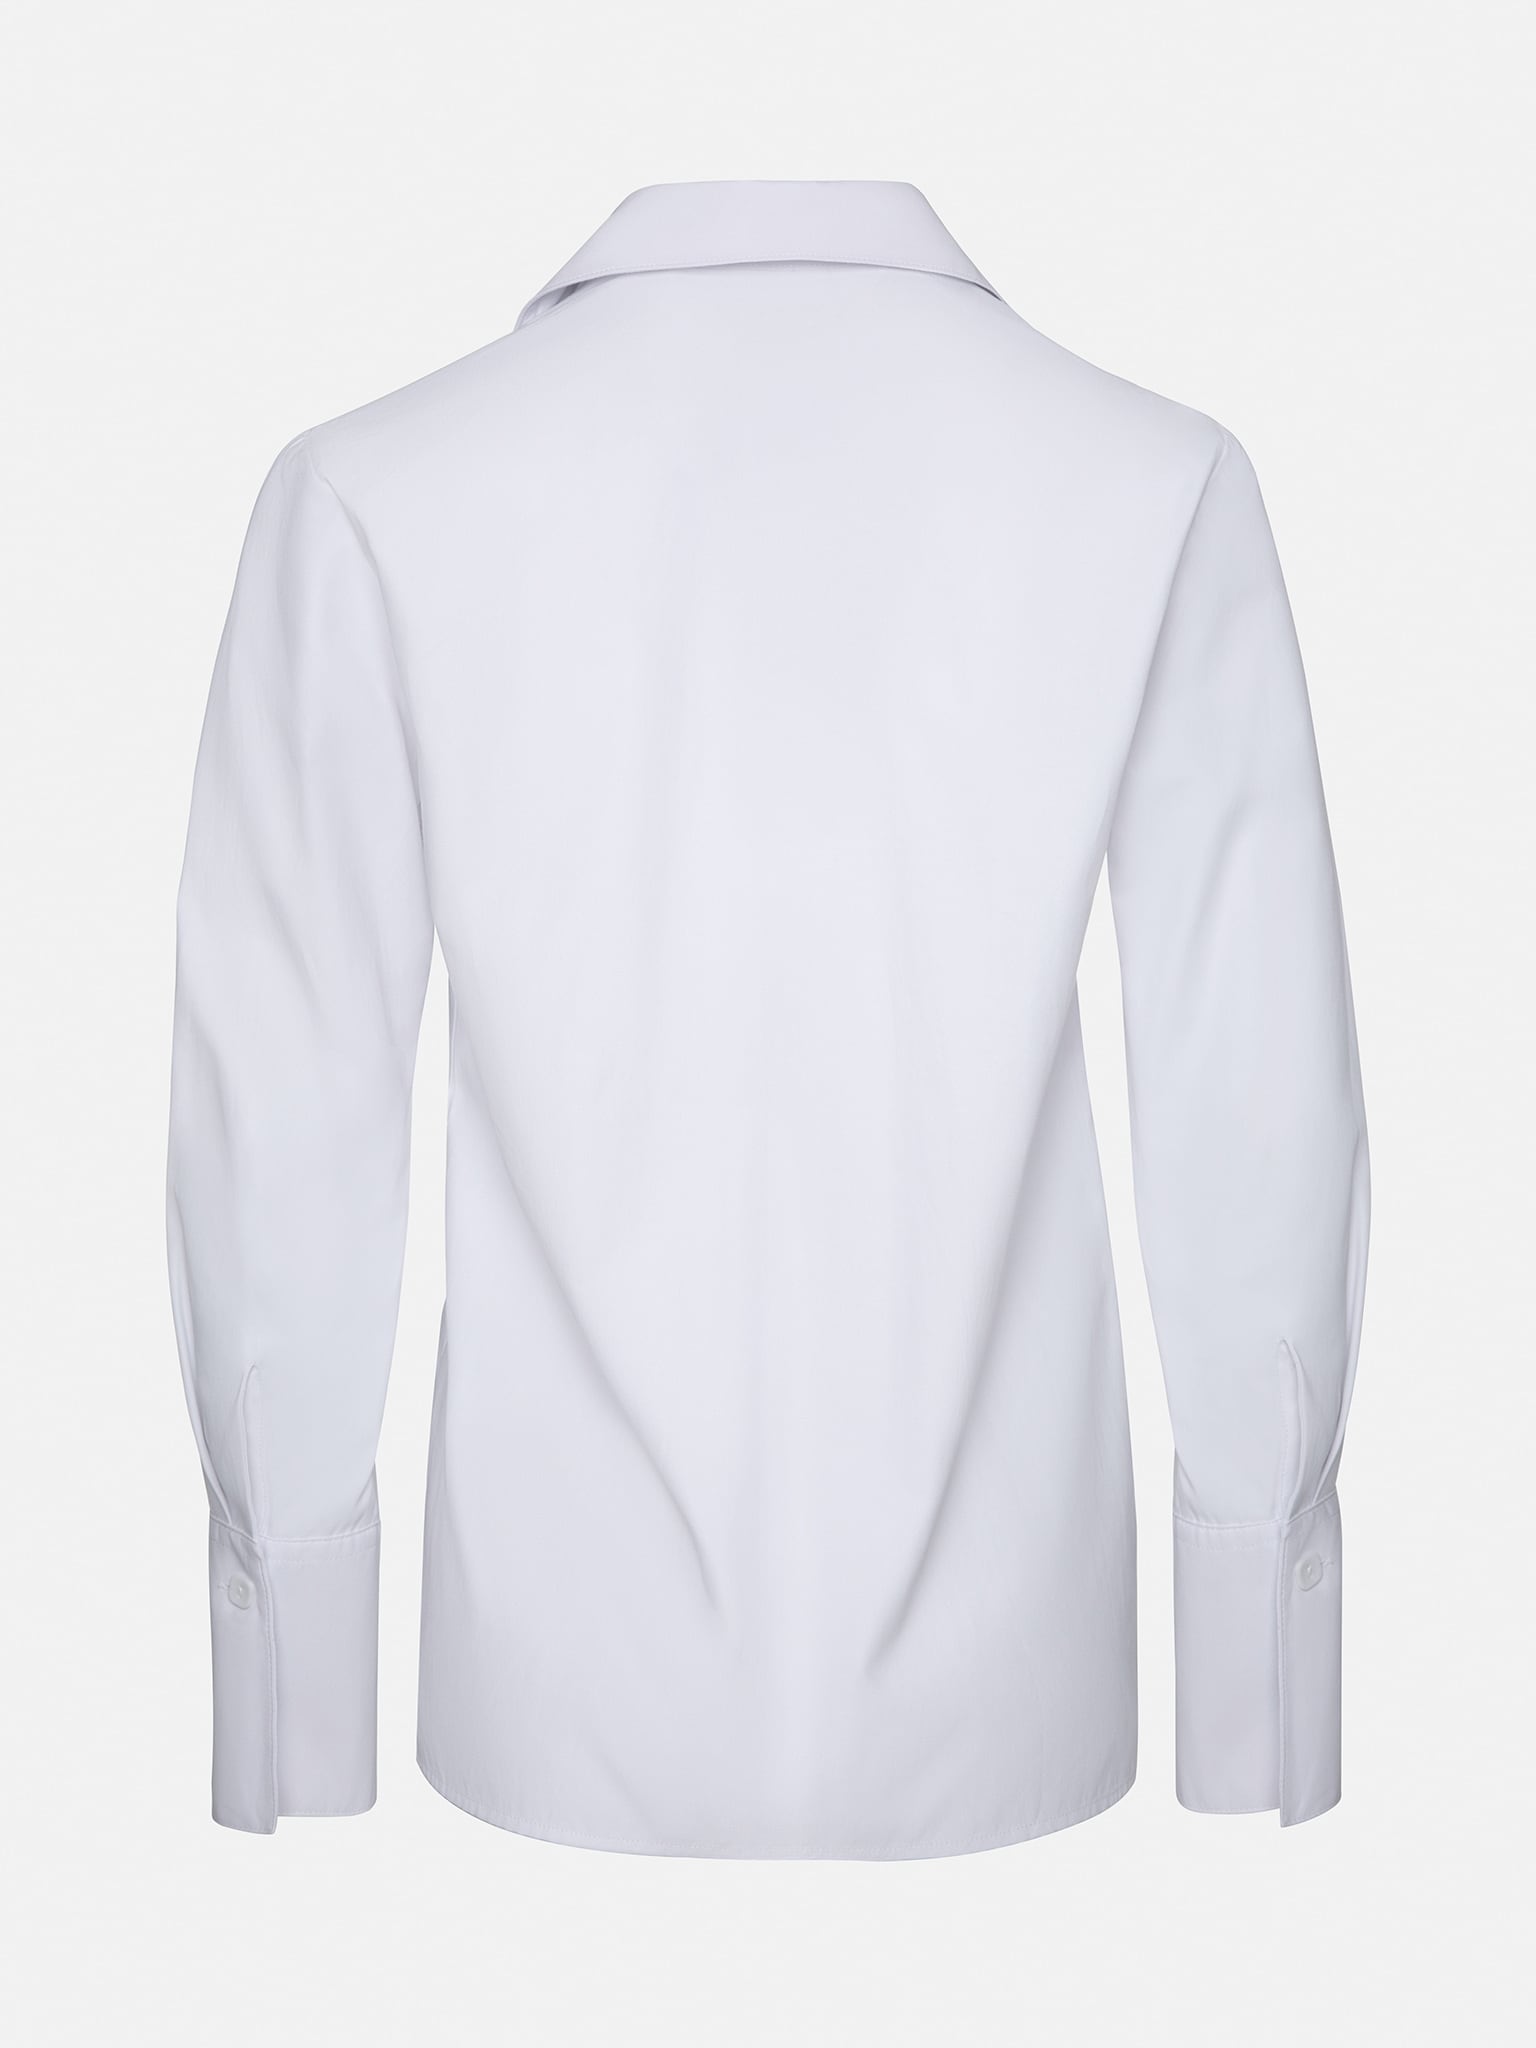 Asymmetric cotton-blend blouse